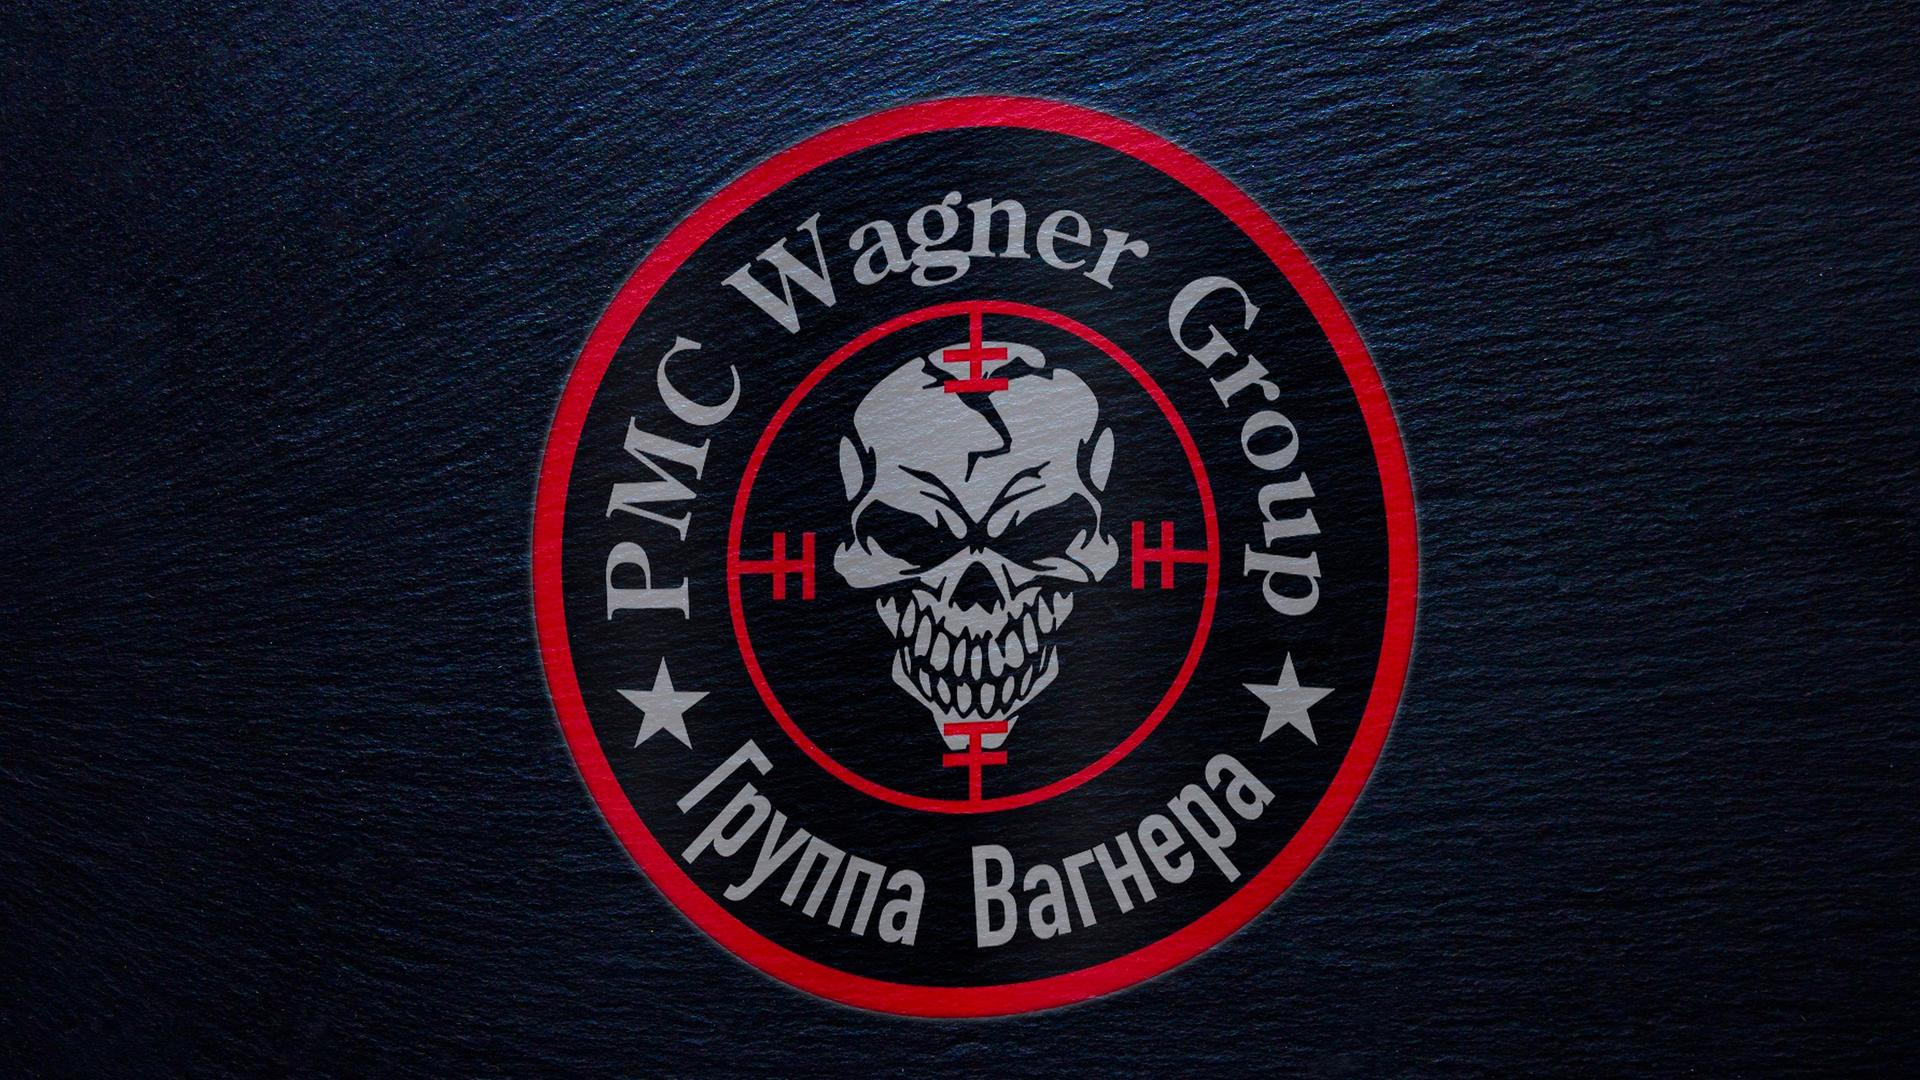 In einem inneren roten Kreis ist ein grinsender Totenkopf abgebildet, in einem äußeren die Schrift "PMC Wagner Group" sowie kyrillische Schrift. Der Hintergrund ist schwarz.